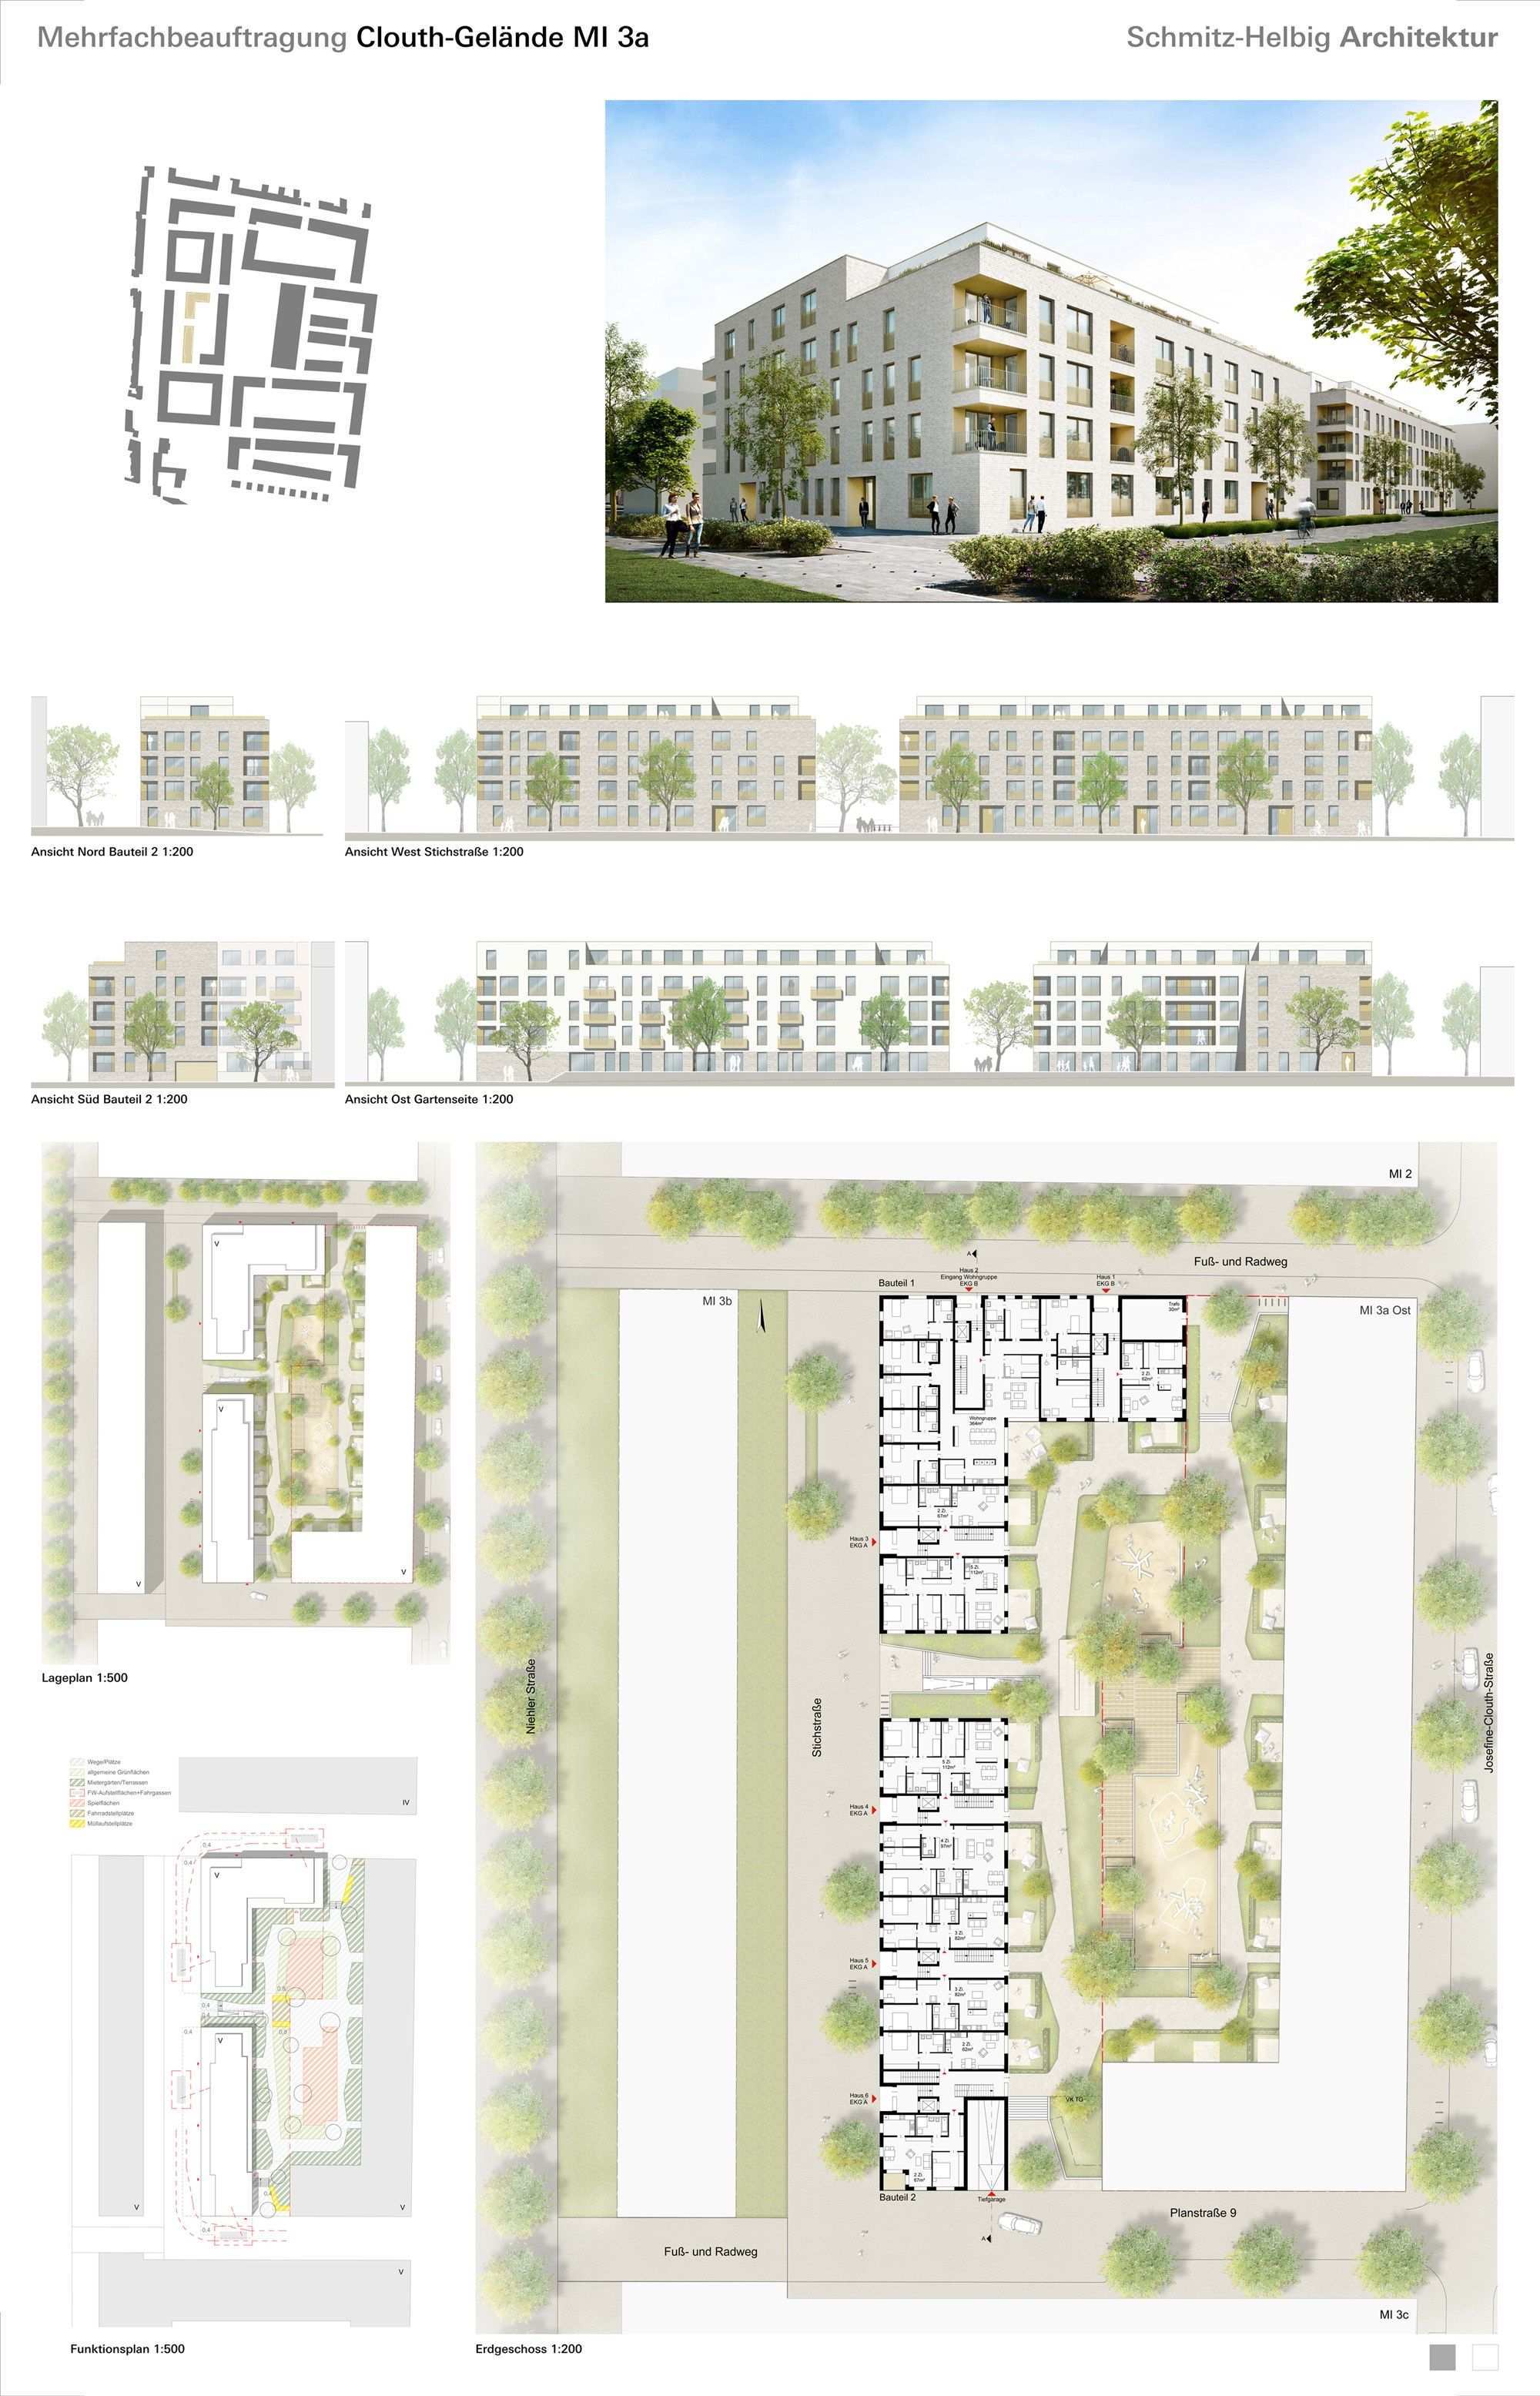 1 Preis Schmitz Helbig Architektur Social Housing Architecture Architecture Presentation Landscape Architecture Model